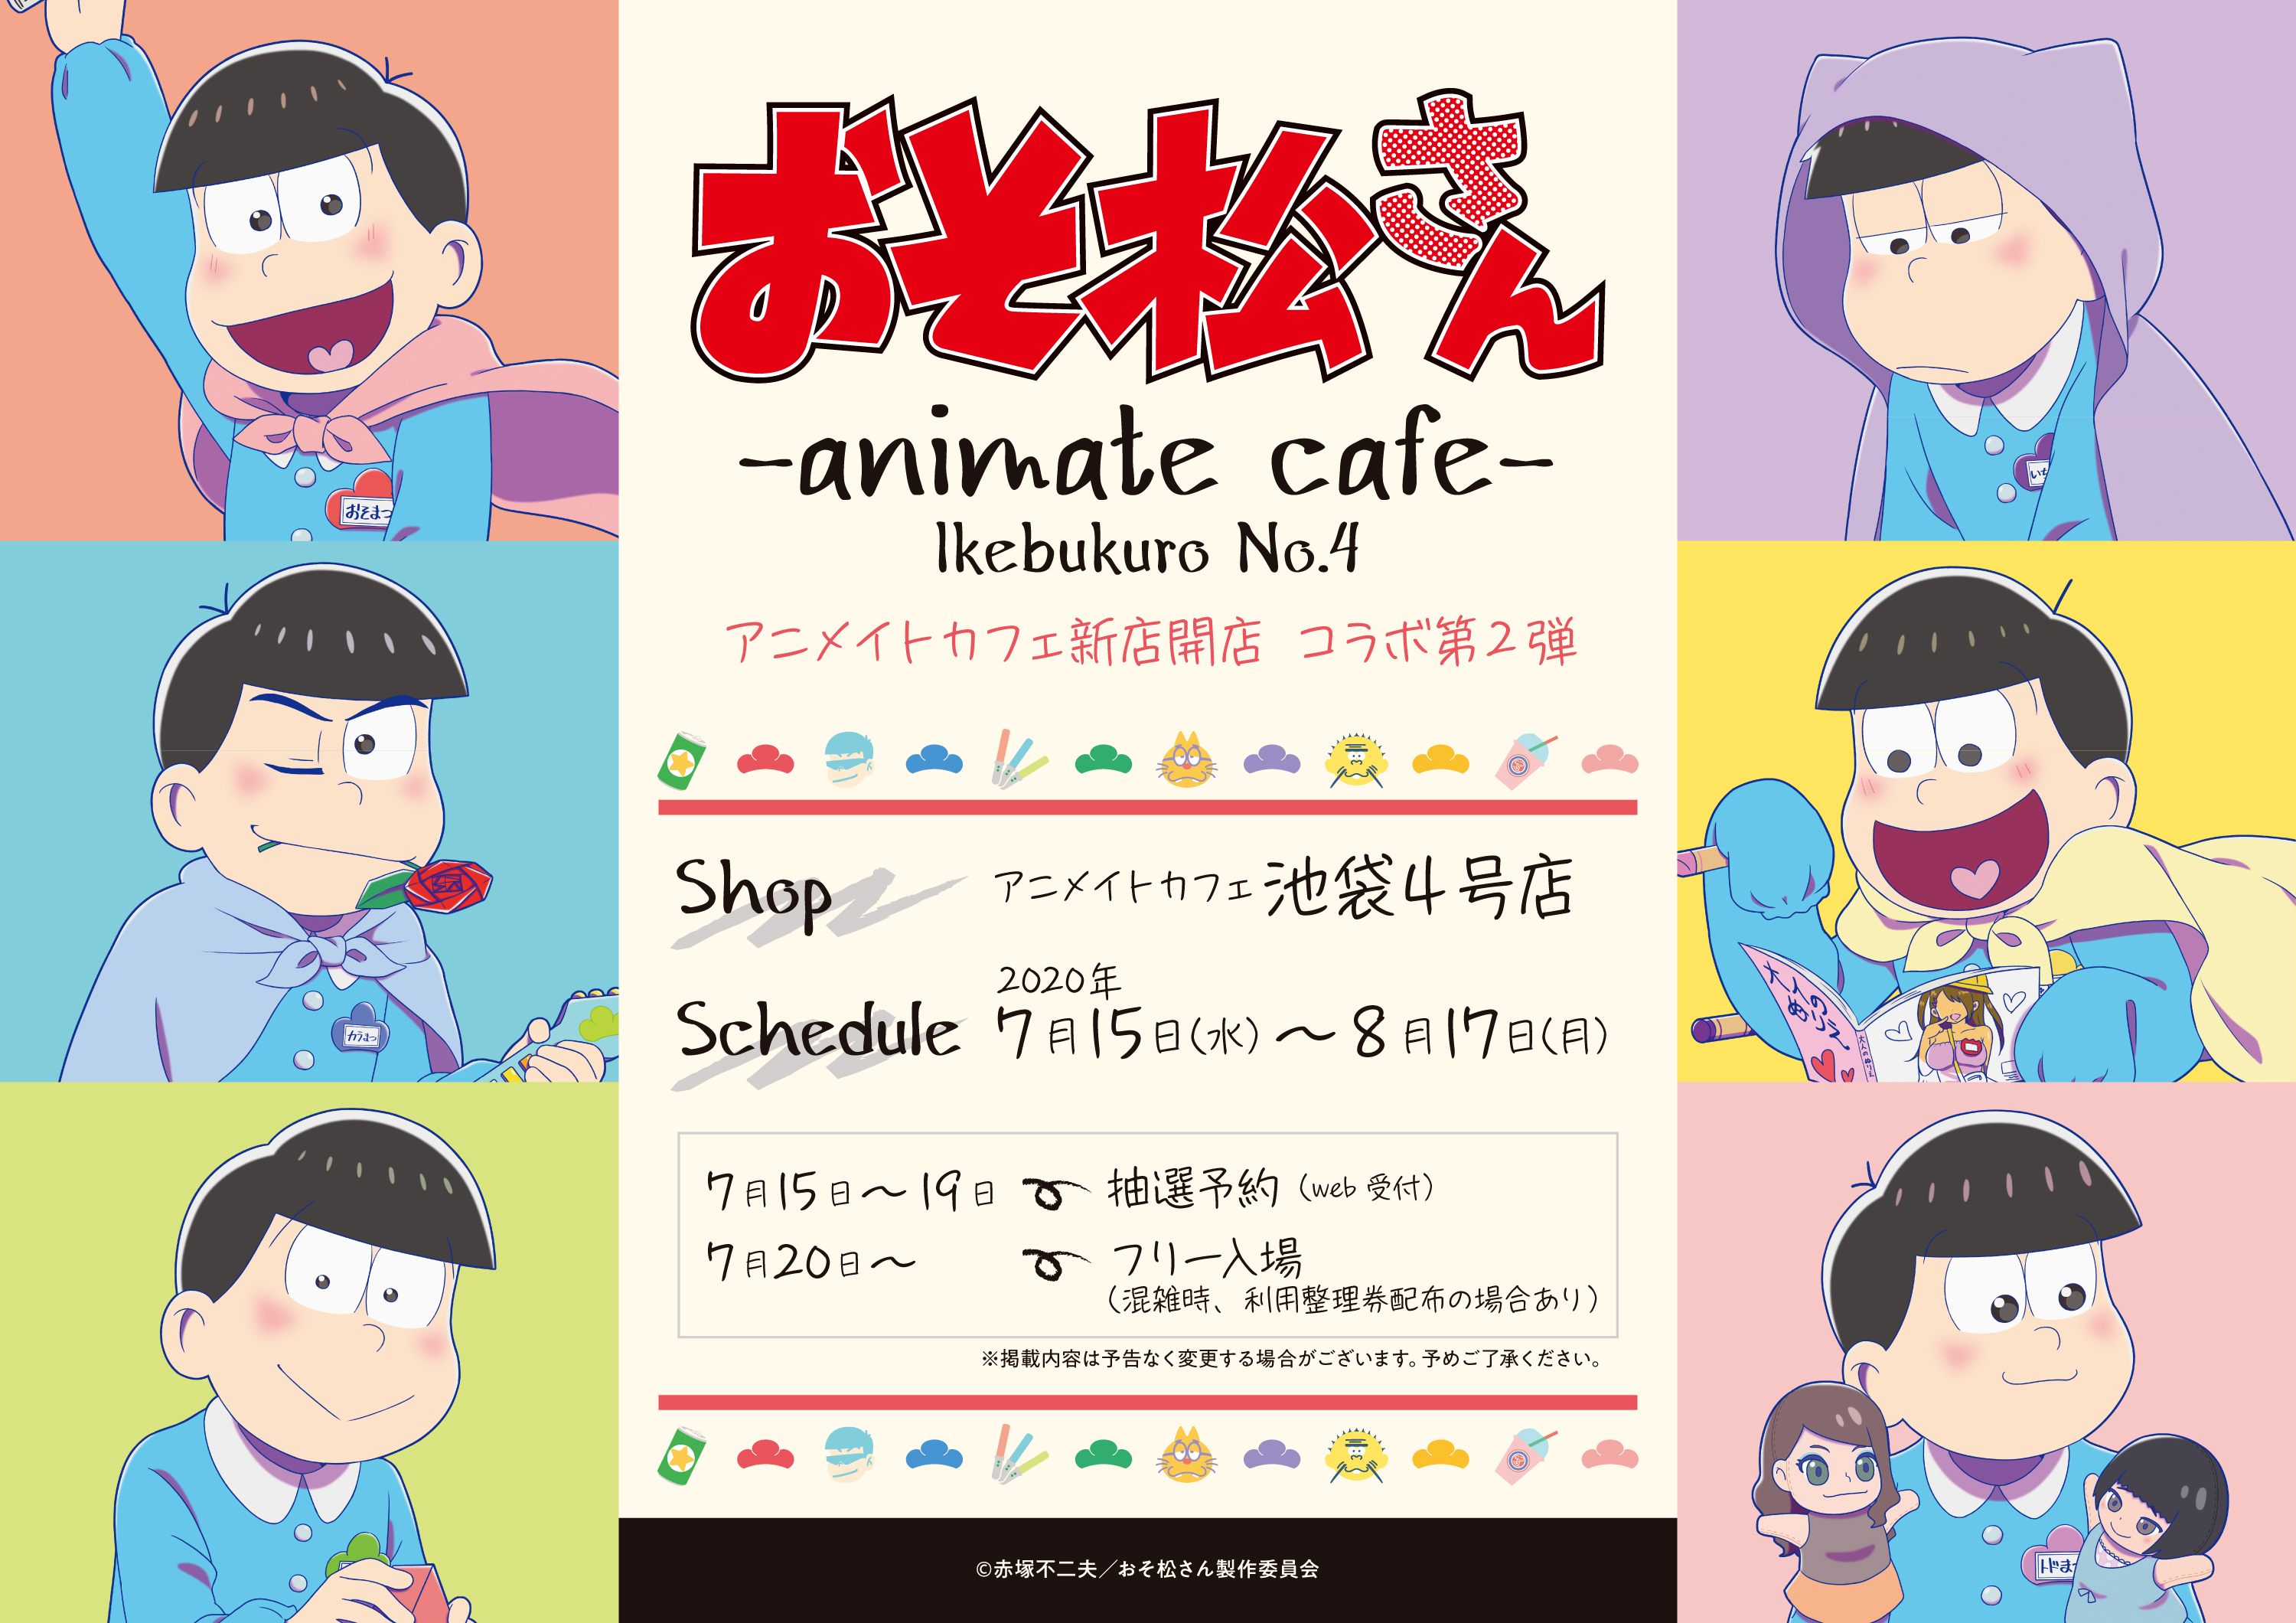 Tvアニメ おそ松 さん とアニメイトカフェのコラボレーションカフェ決定 アニメイトカフェ池袋4号店で7月15日より開催 株式会社アニメイトホールディングスのプレスリリース